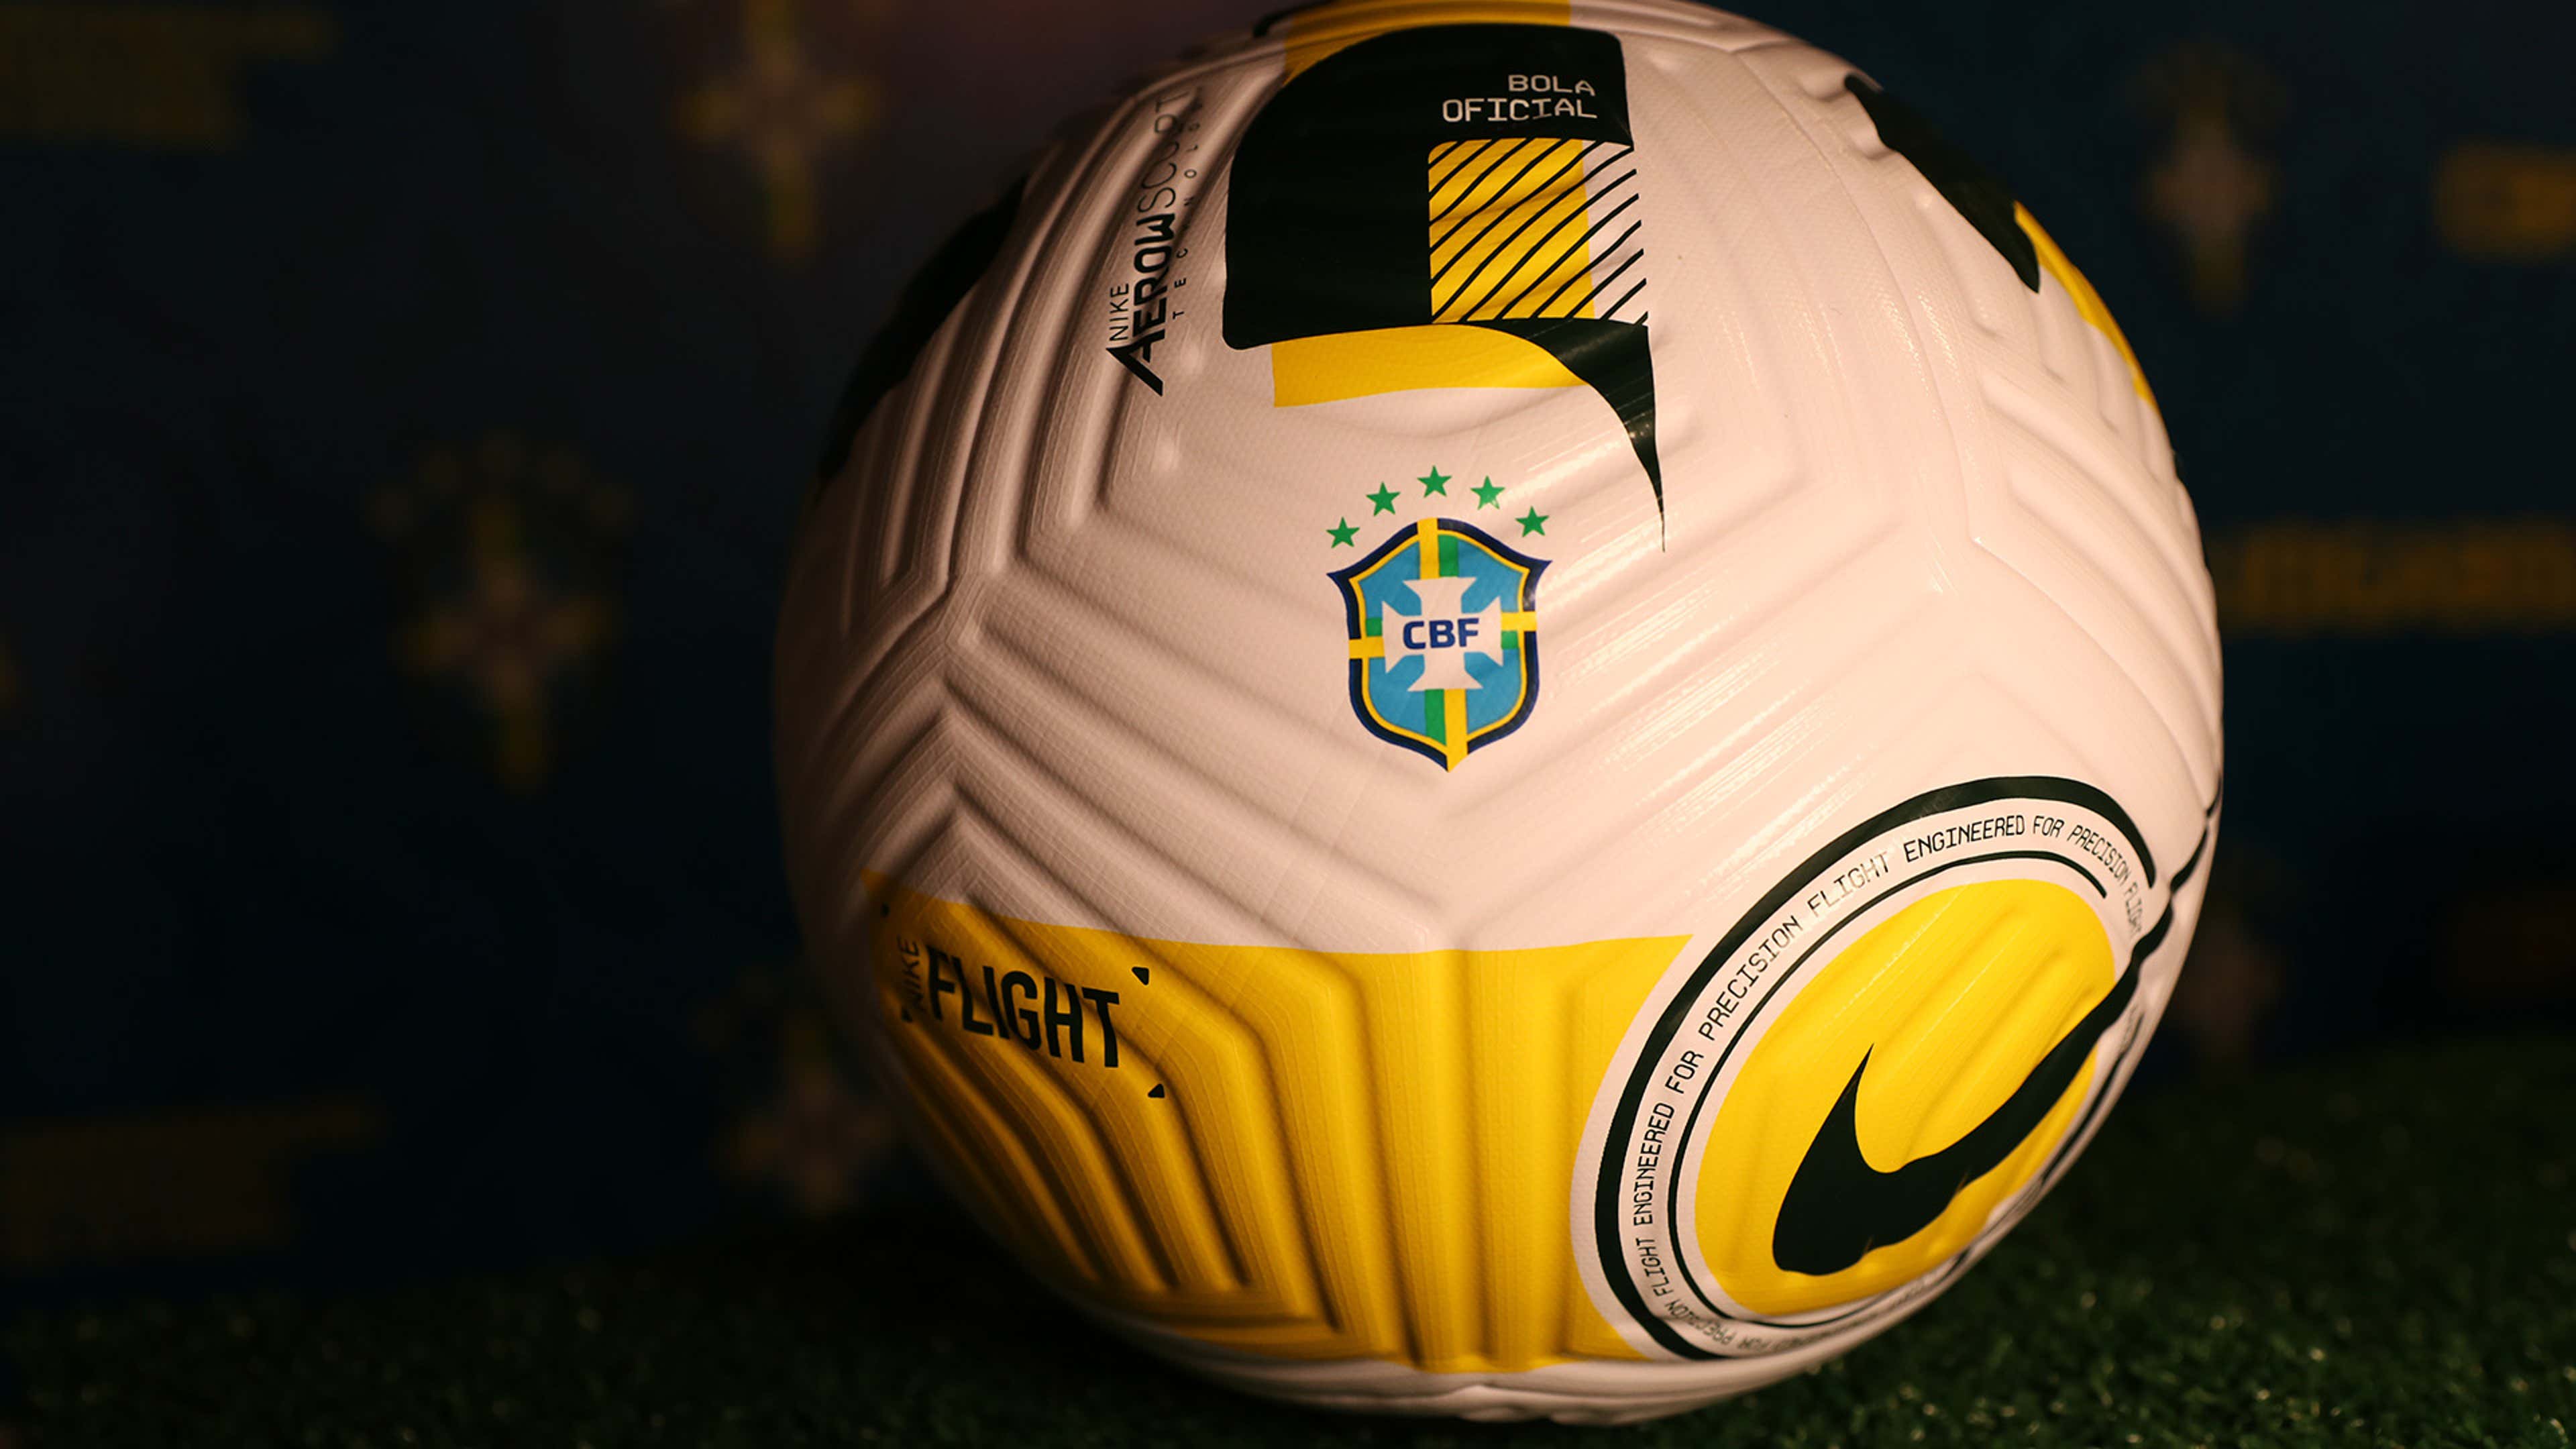 Empresa quer investir US$ 1 bilhão em Nova Liga do Brasil